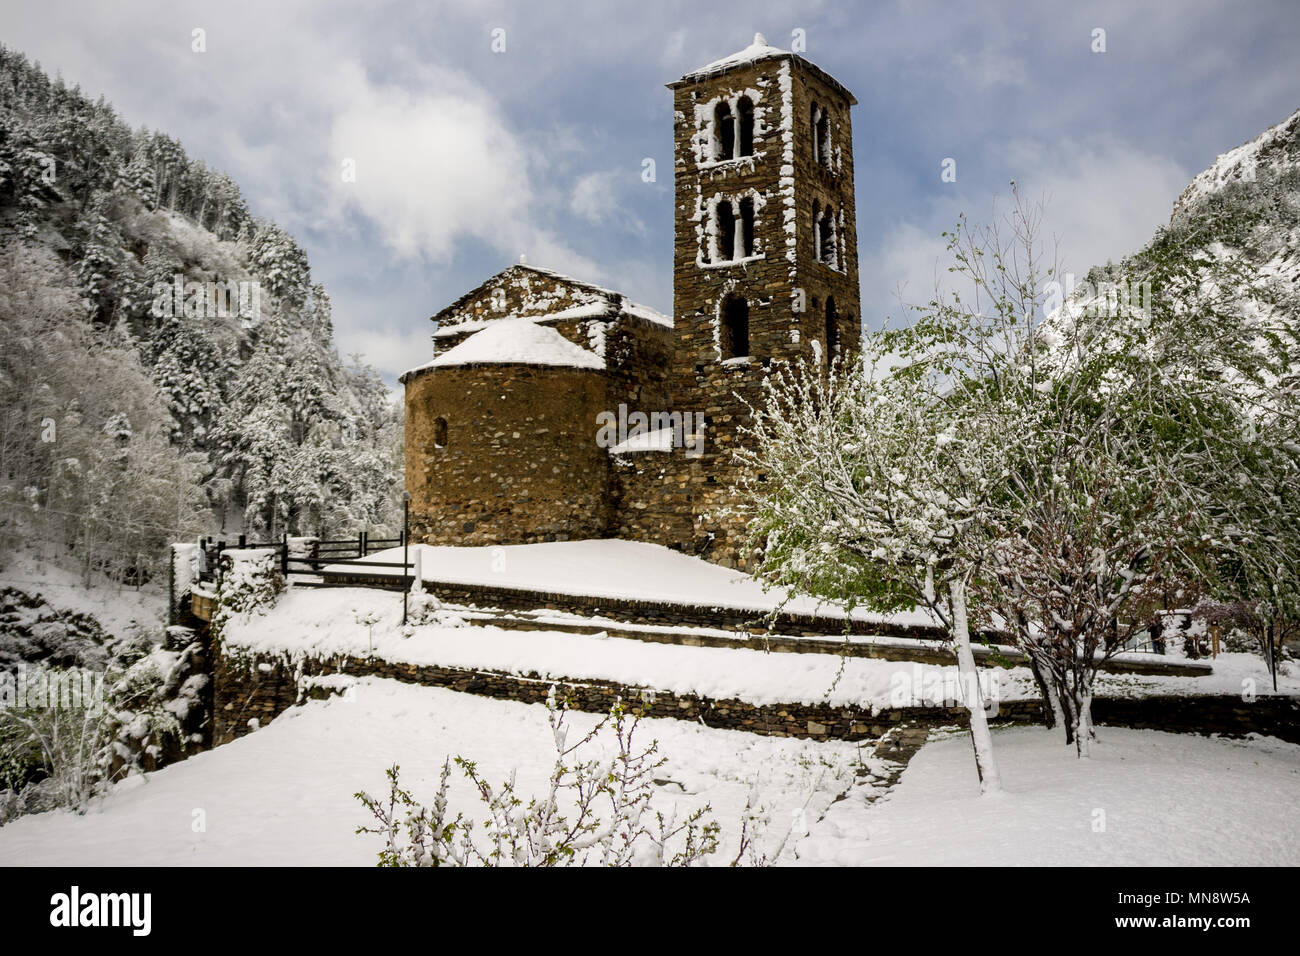 Església de Sant Joan de caselles, una iglesia ubicada en Canillo, Andorra. Se trata de un patrimonio propiedad inscrita en el Patrimonio Cultural de Andorra Foto de stock